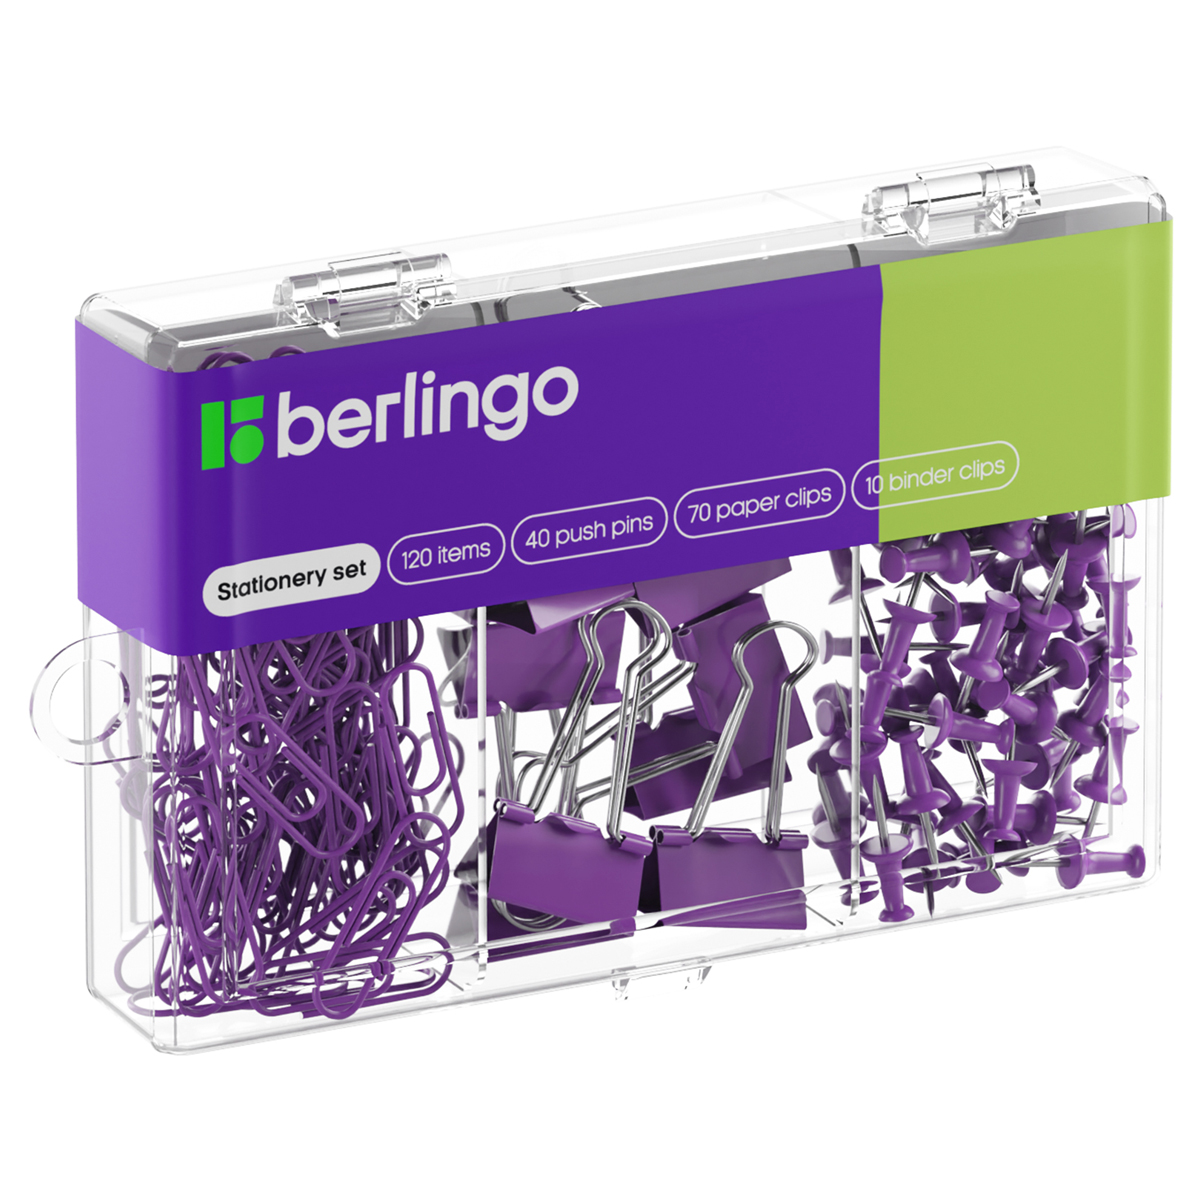 Набор мелкоофисных принадлежностей Berlingo, 120 предметов, фиолетовый, пластиковая упаковка Mcn_12000a